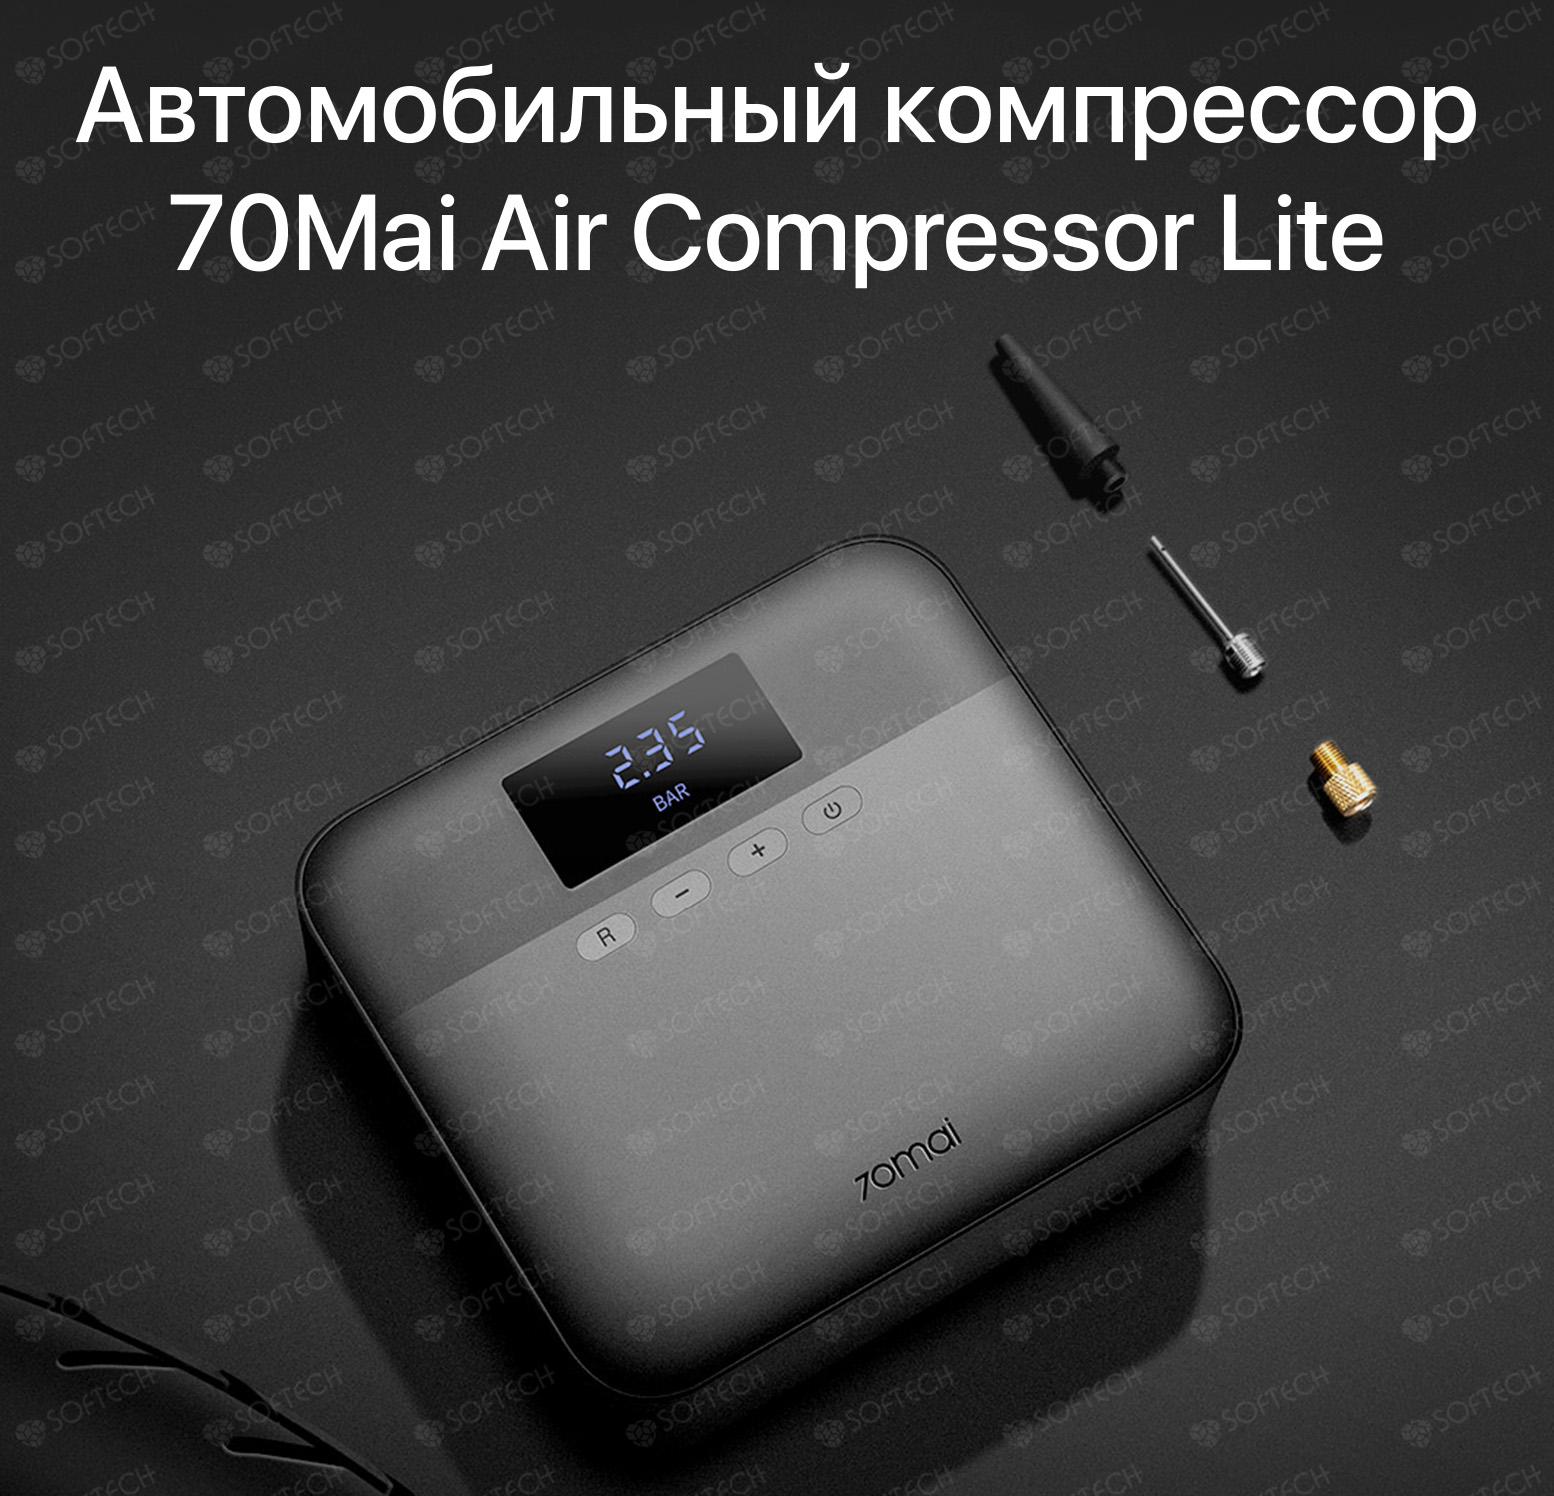 70mai air compressor midrive tp03. Автомобильный компрессор Xiaomi 70mai Air Compressor Lite. Автомобильный компрессор 70mai Air Compressor MIDRIVE tp01. Автомобильный компрессор Xiaomi 70mai Air Compressor MIDRIVE tp01. Автомобильный компрессор 70mai Air Compressor Lite черный.